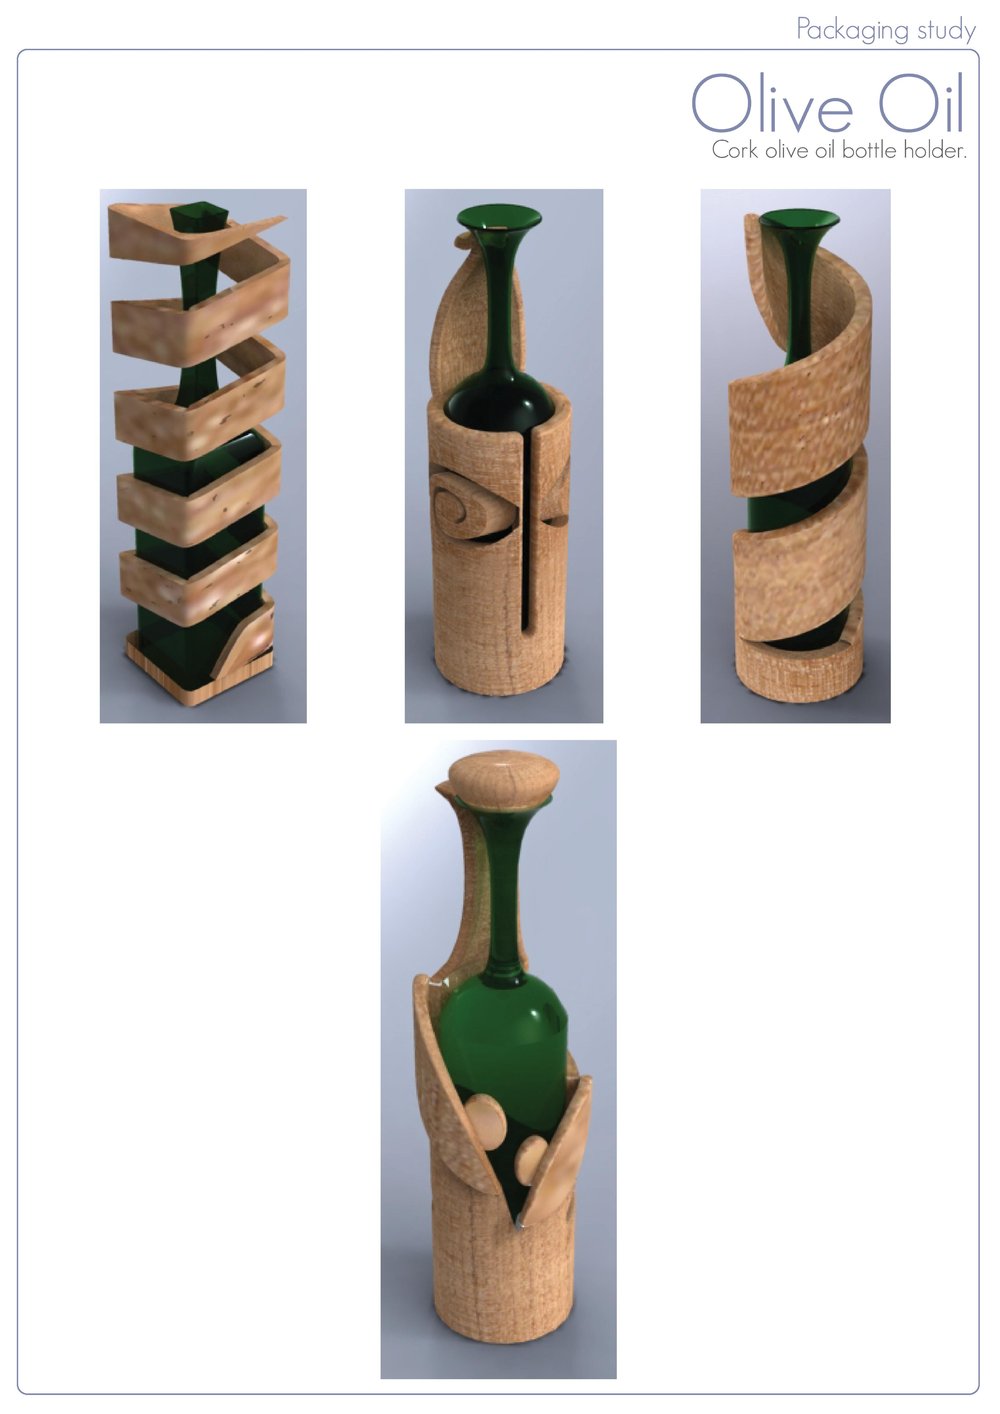 Packaging Study<br/><span>Cork olive oil bottle holder.</span>